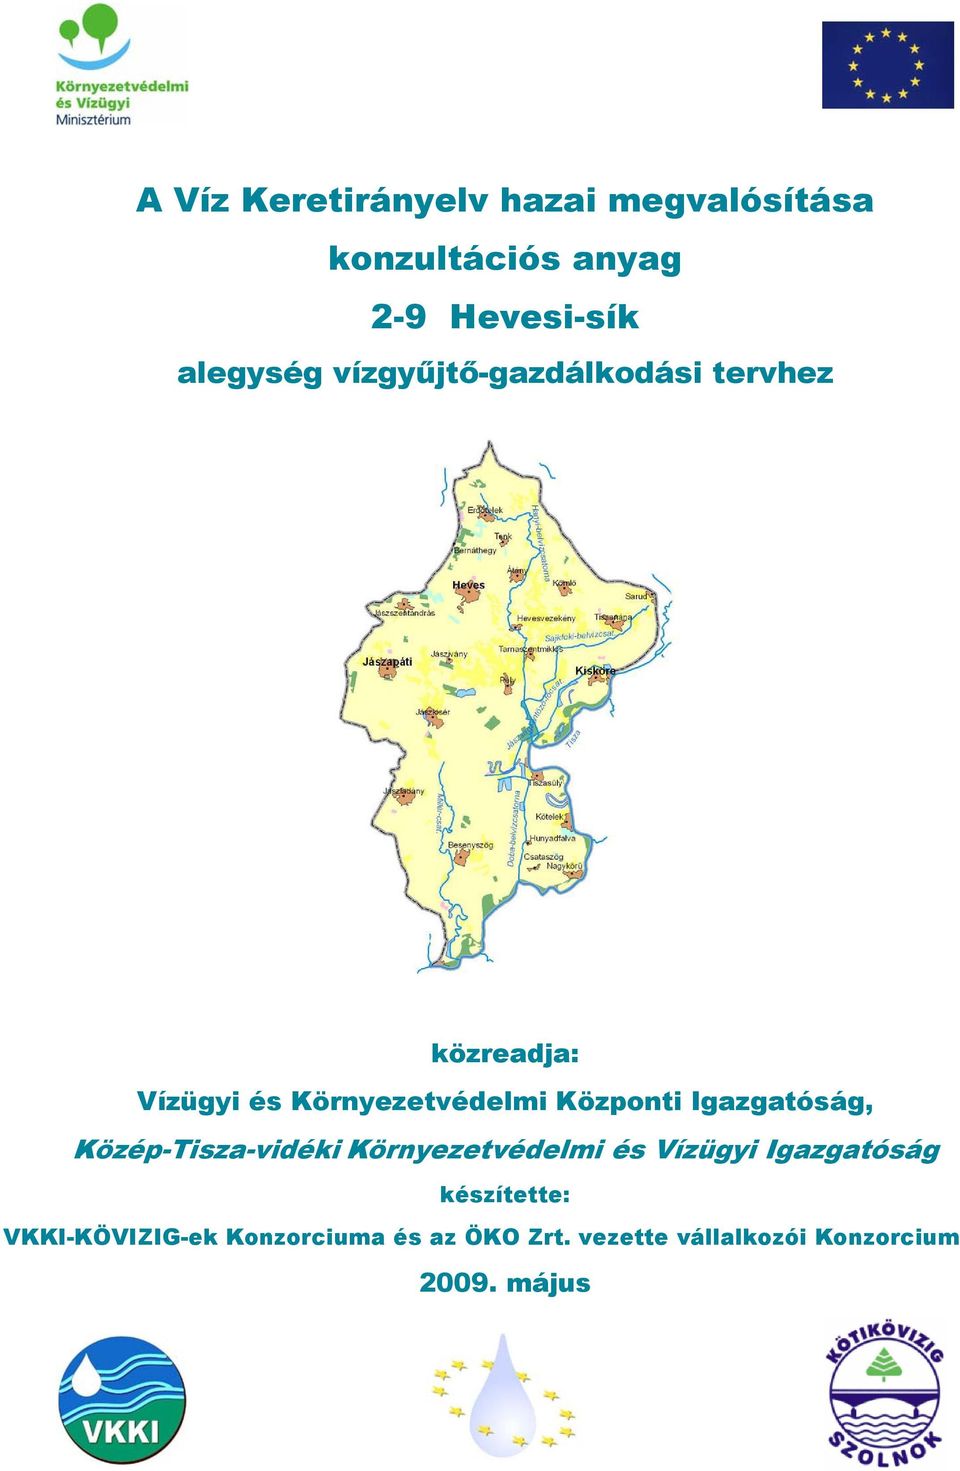 Igazgatóság, Közép-Tisza-vidéki Környezetvédelmi és Vízügyi Igazgatóság